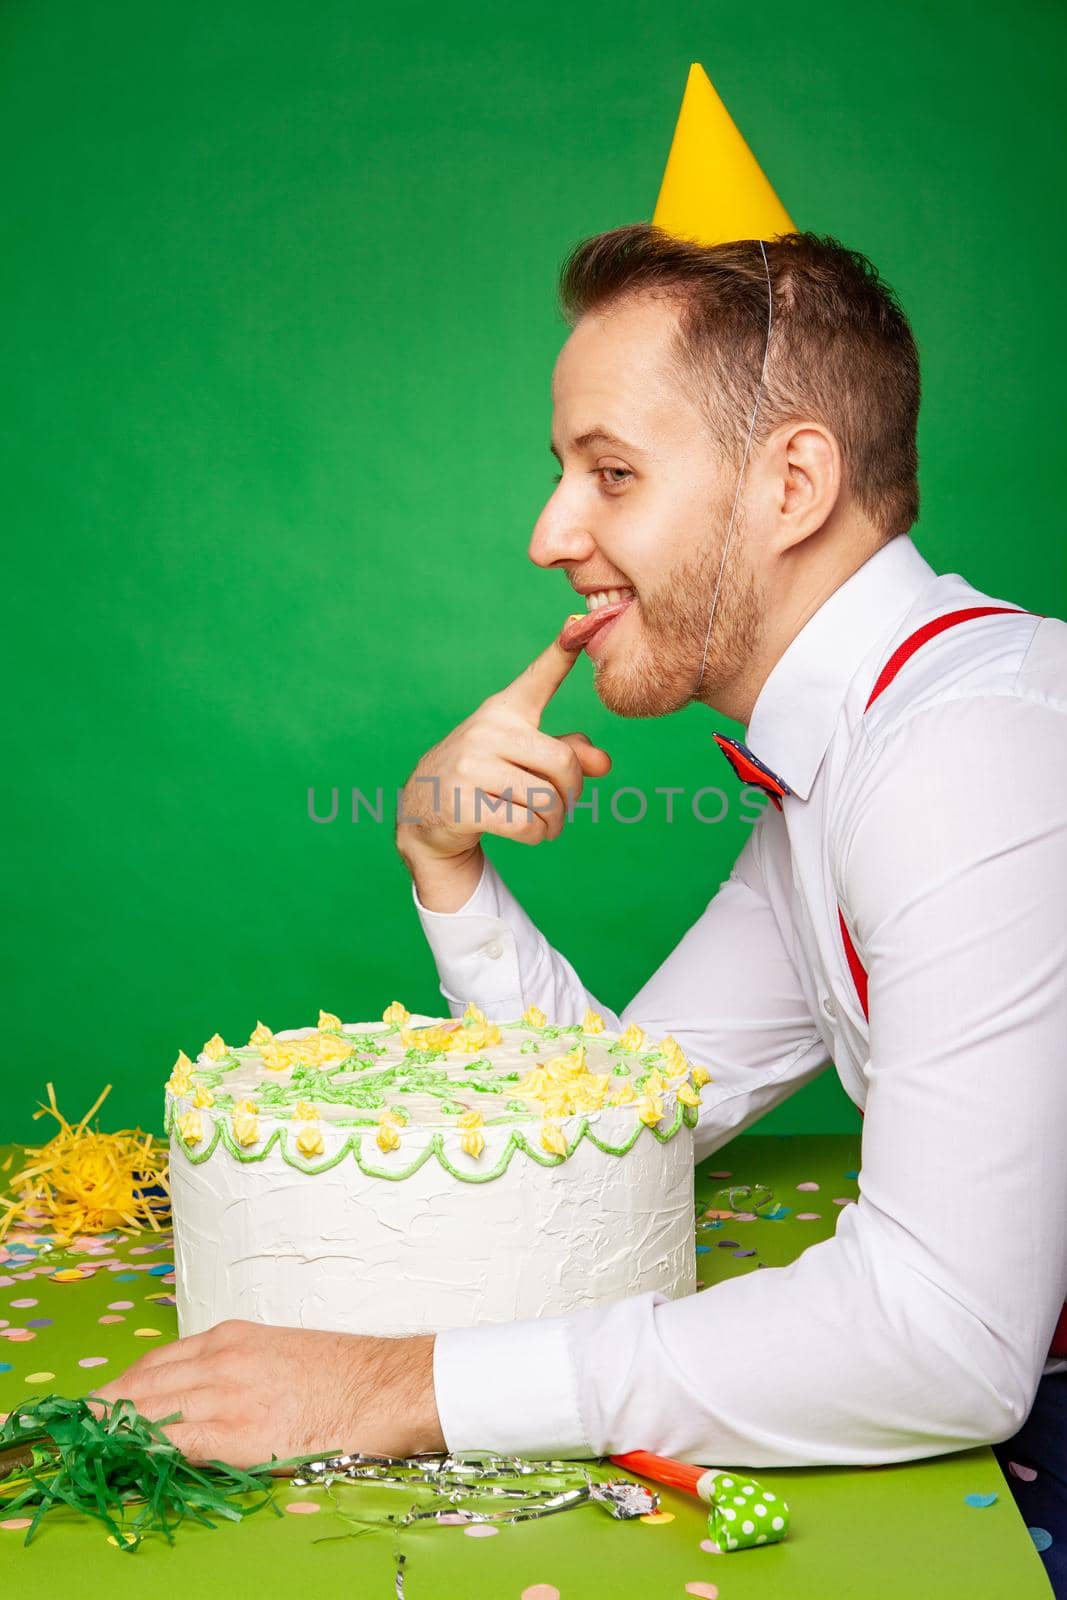 Man tasting birthday cake on green background by Julenochek